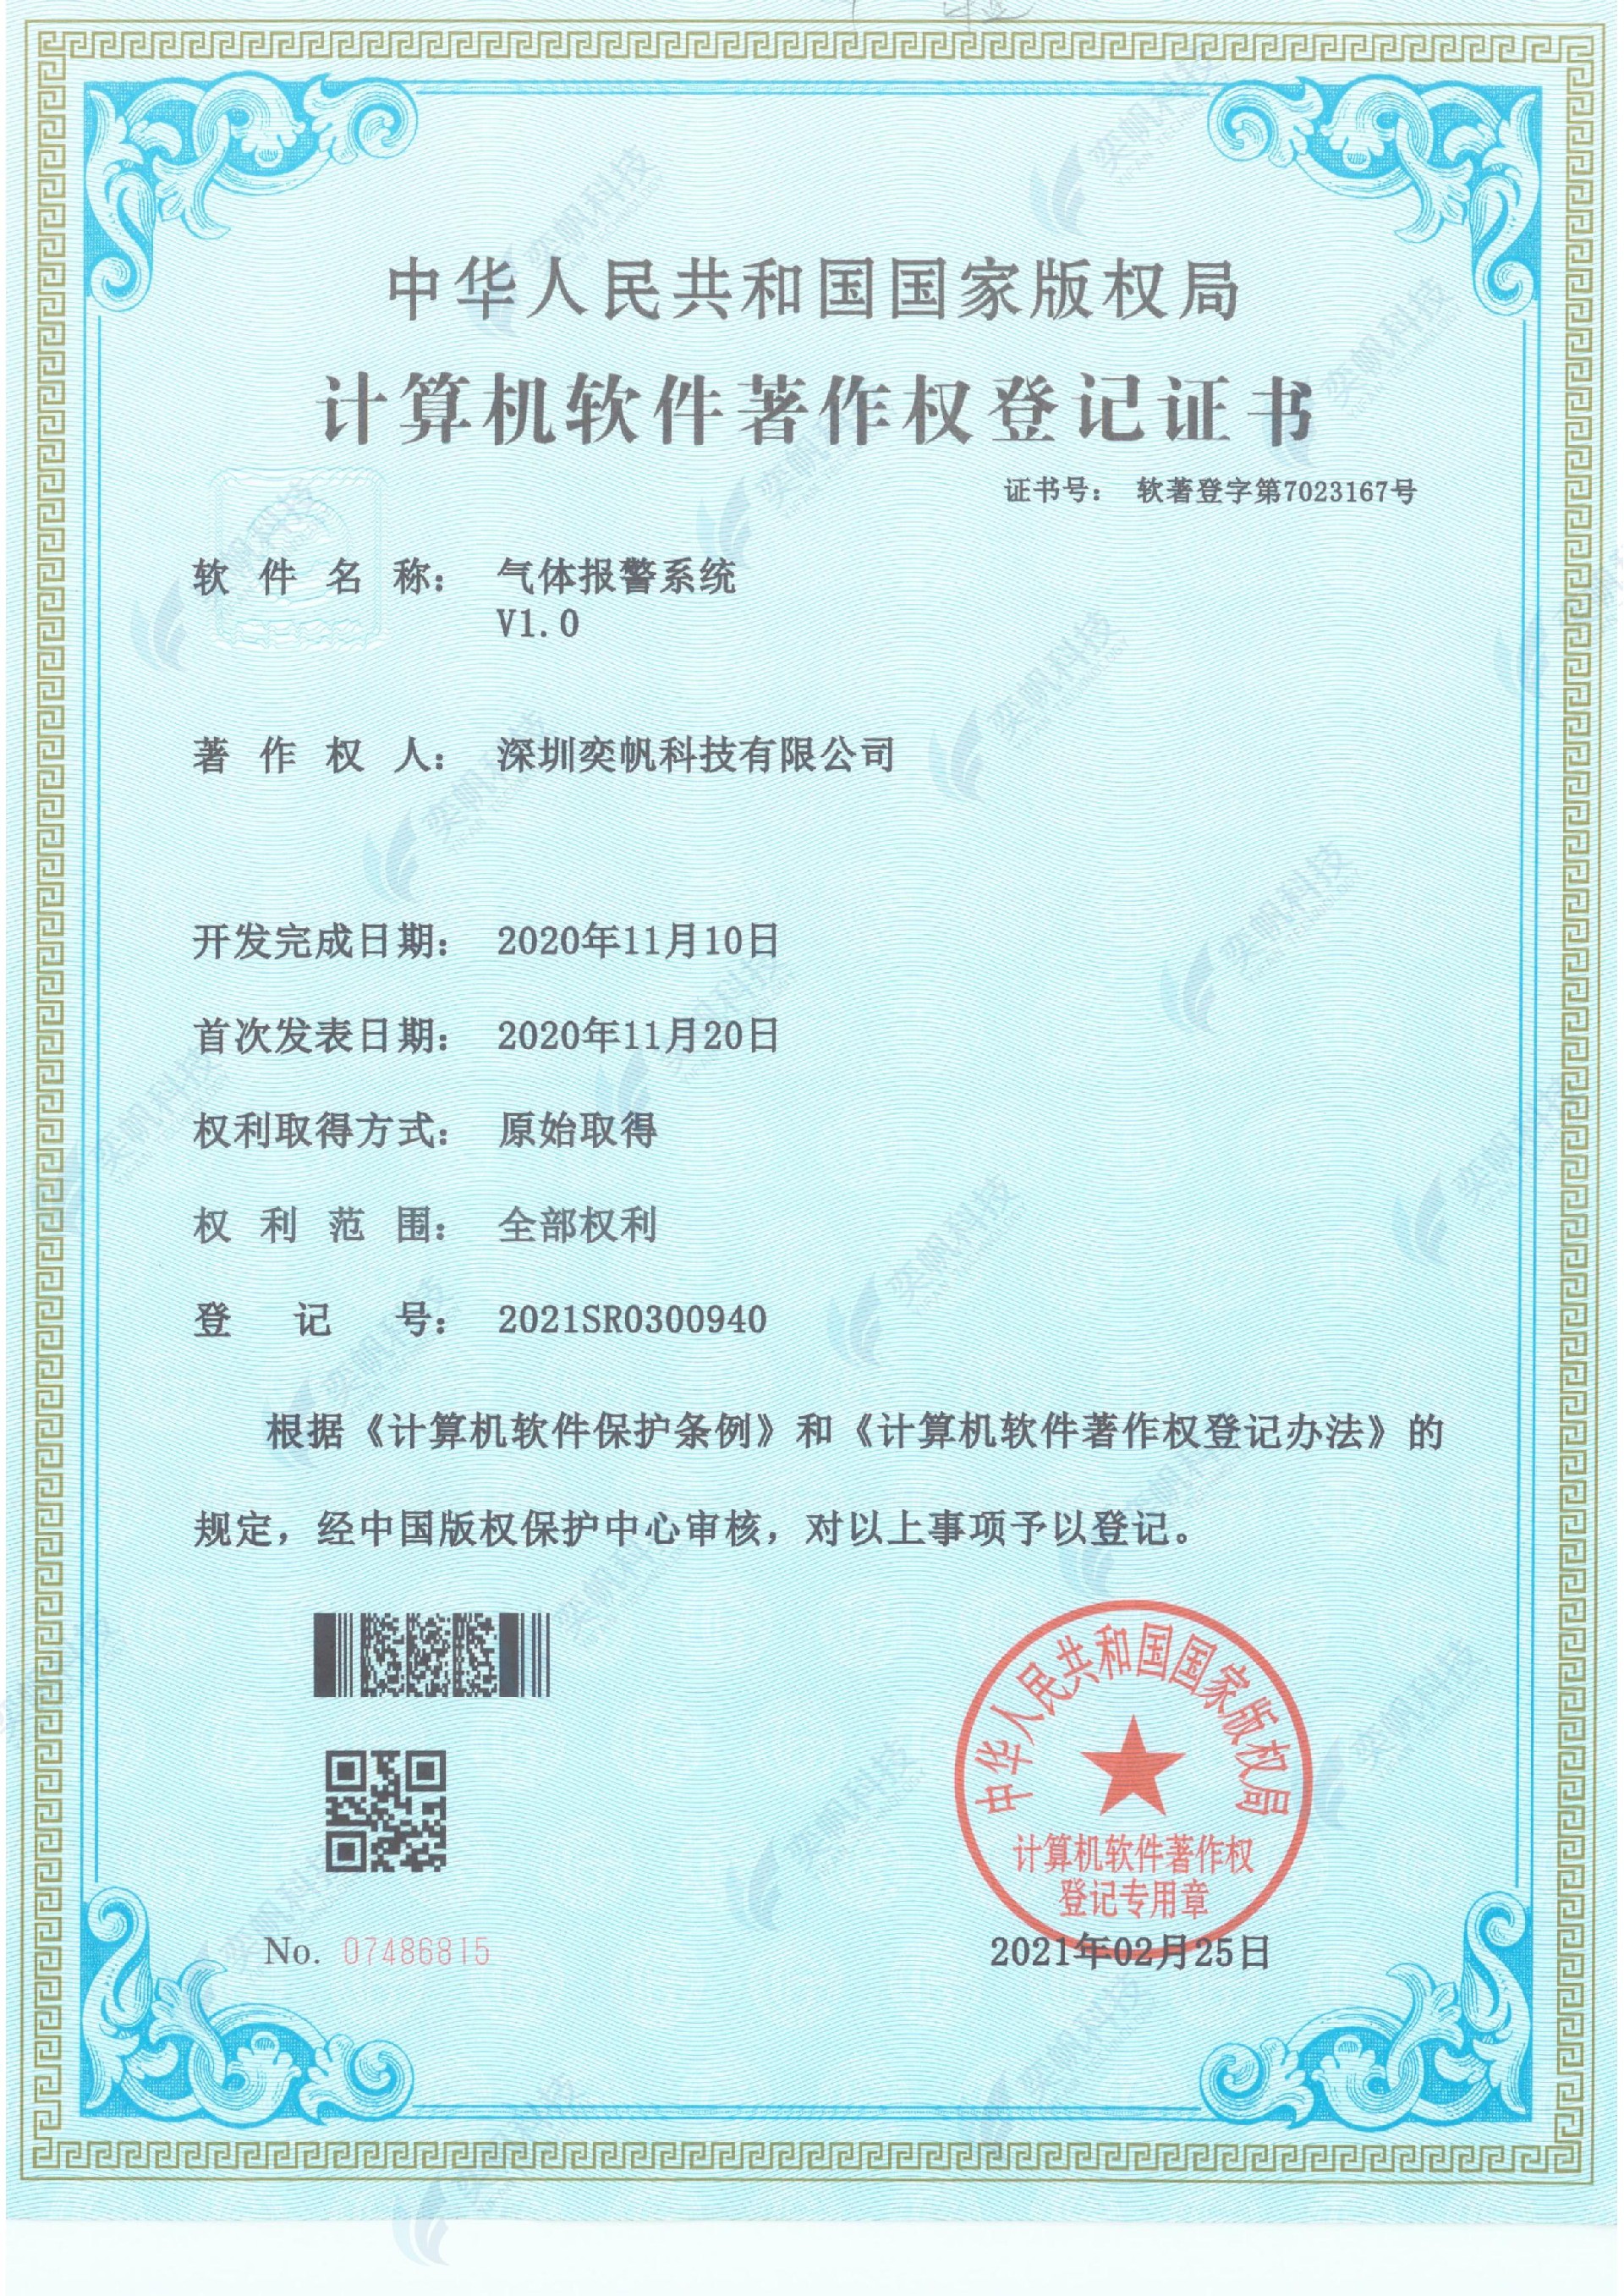 气体报警系统-计算机软件著作权登记证书_00.jpg